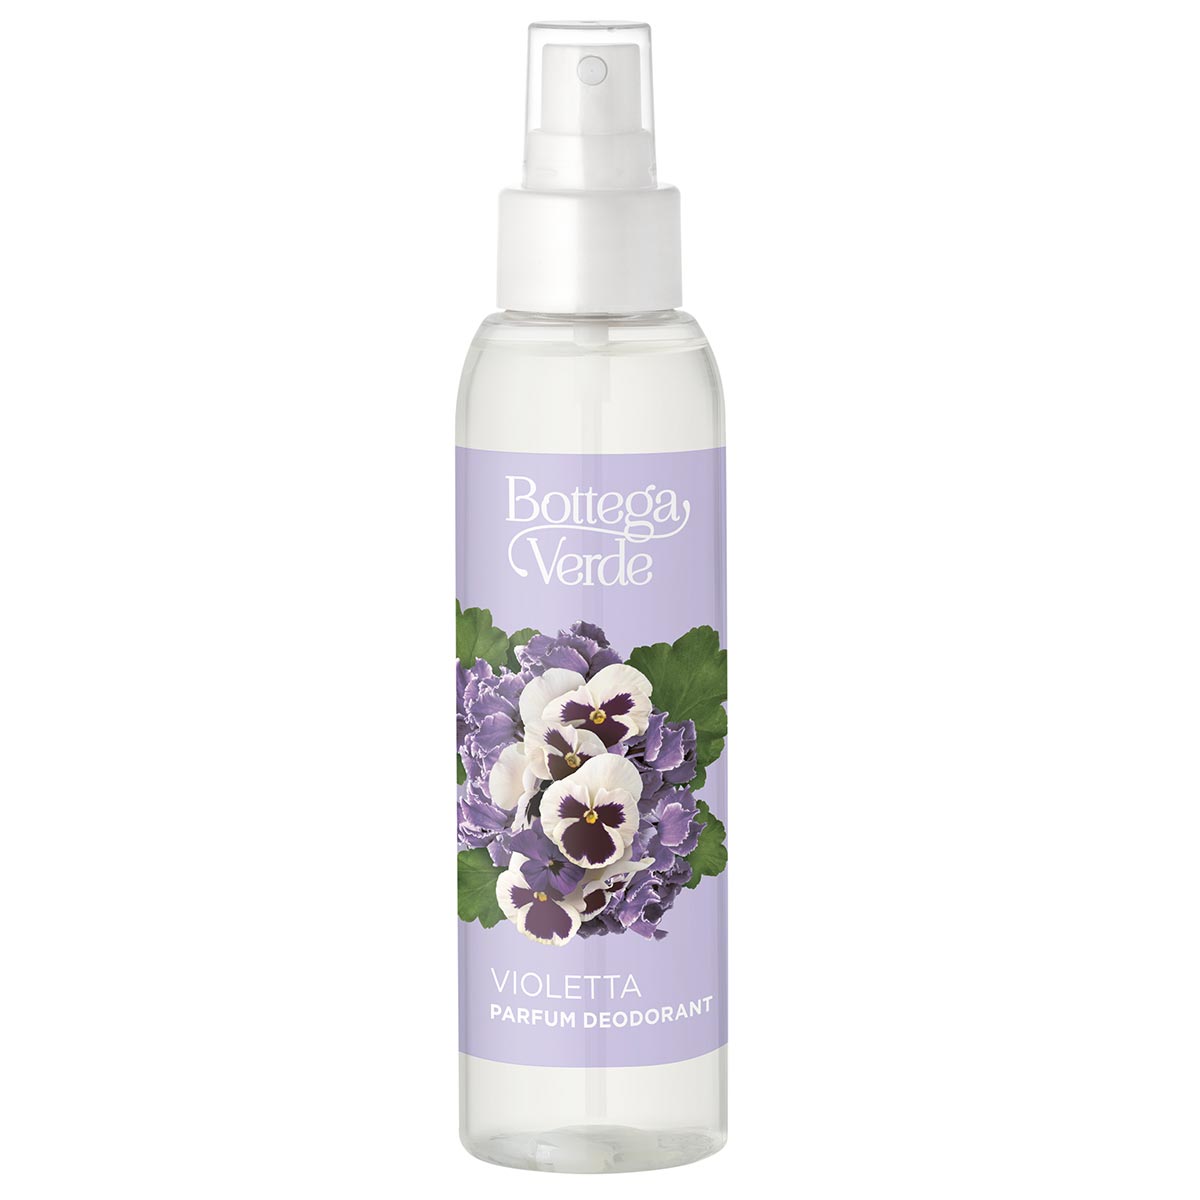 Parfum deodorant, delicat, cu aroma de violete Bottega Verde Bottega Verde